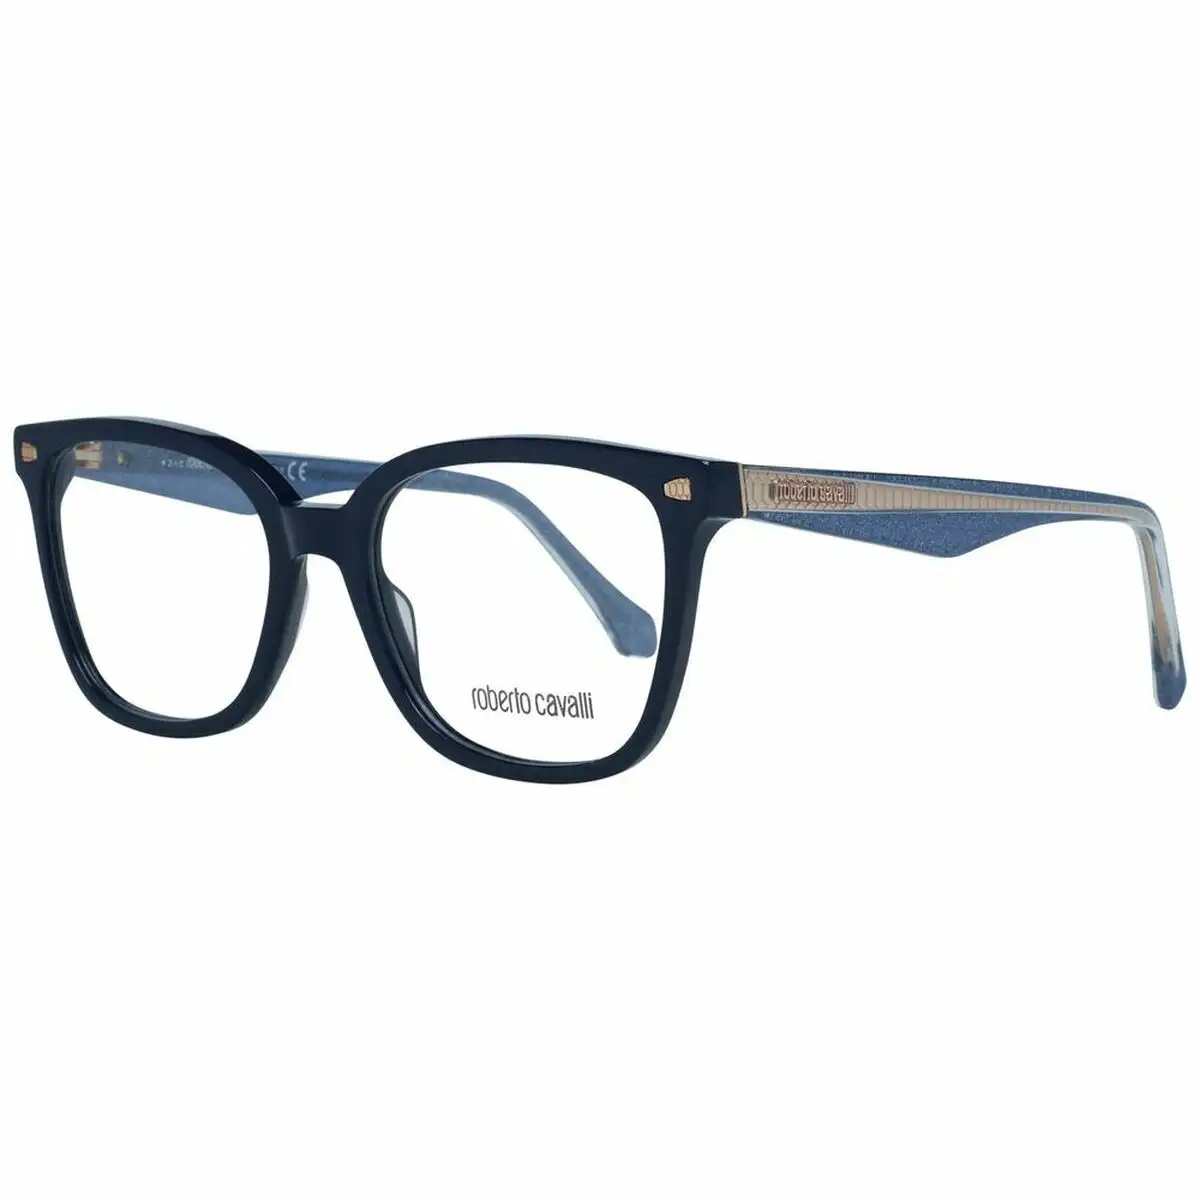 Monture de lunettes femme roberto cavalli rc5078 52090 bleu o 52 mm _1838. Bienvenue chez DIAYTAR SENEGAL - Où Choisir est un Voyage. Plongez dans notre plateforme en ligne pour trouver des produits qui ajoutent de la couleur et de la texture à votre quotidien.